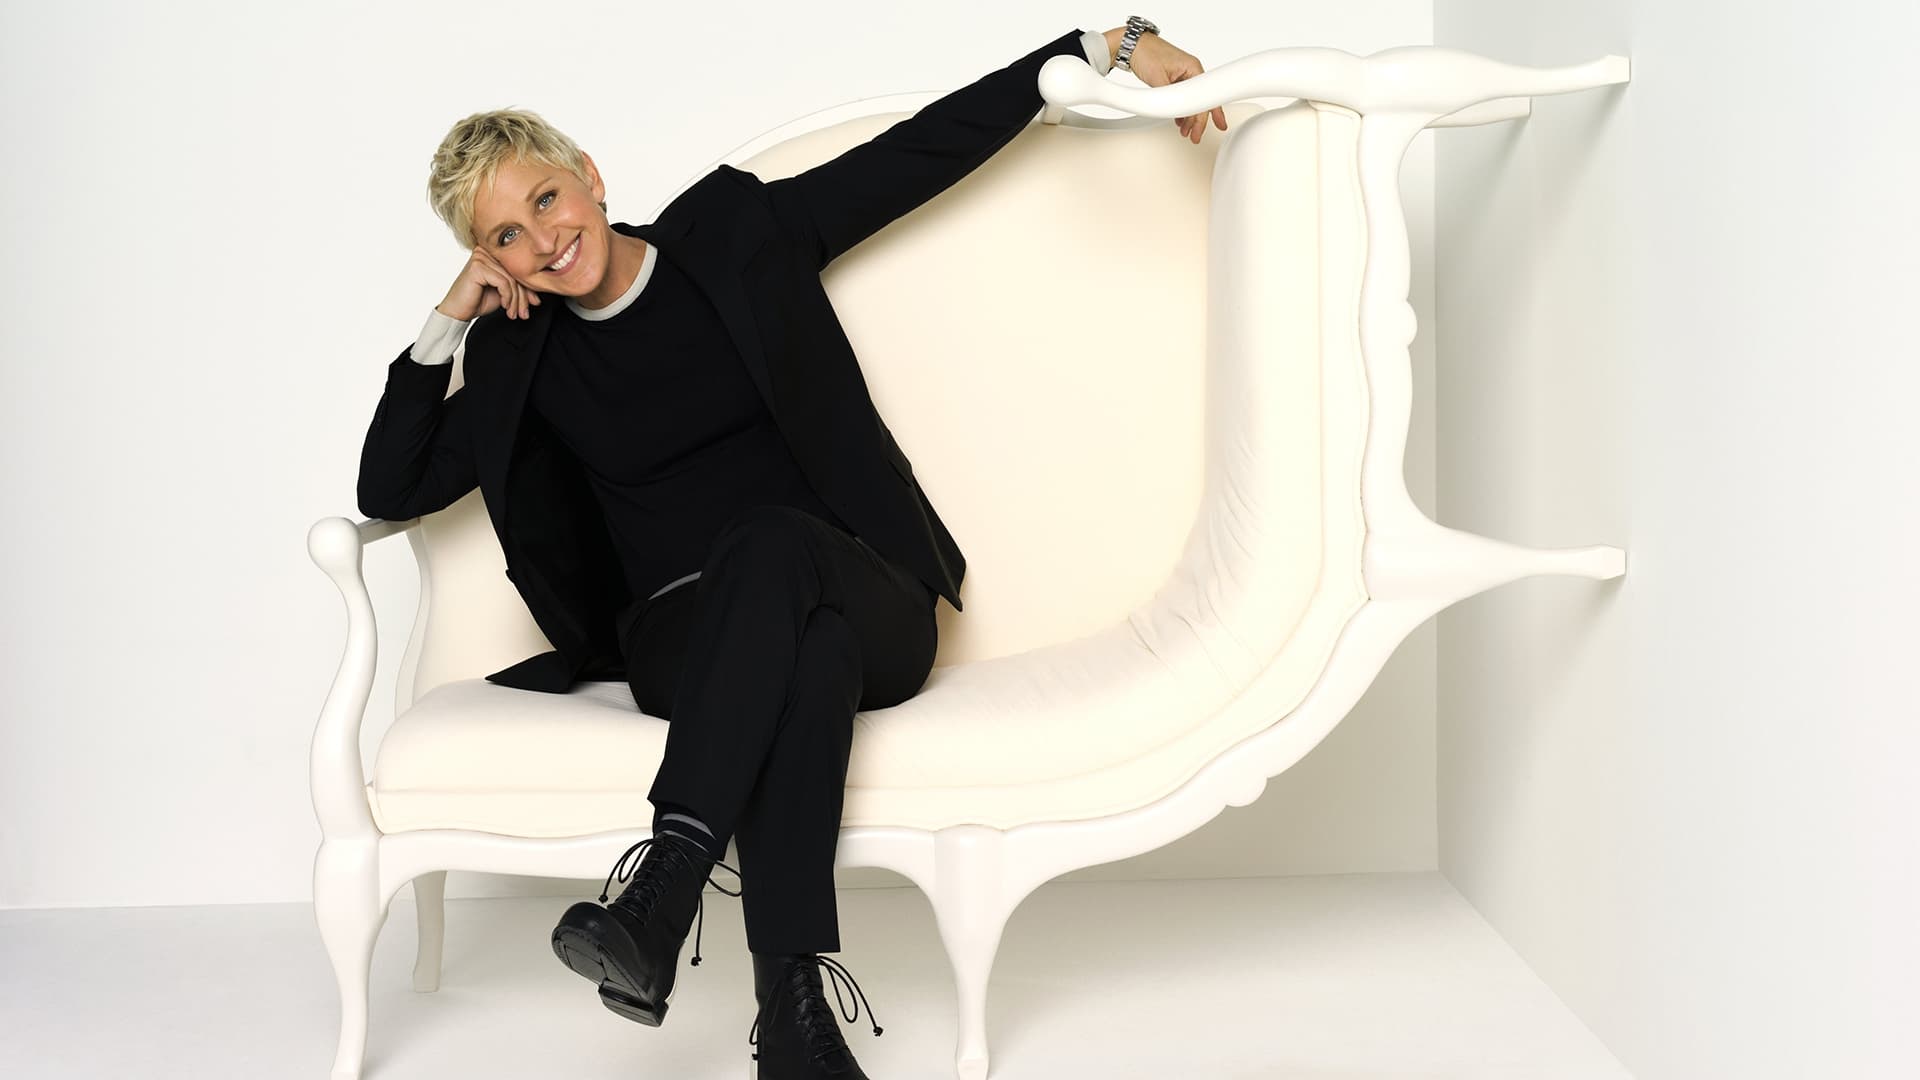 The Ellen DeGeneres Show - Season 19 Episode 54 : Day 4 of 12 Days of Giveaways with Ben Platt!